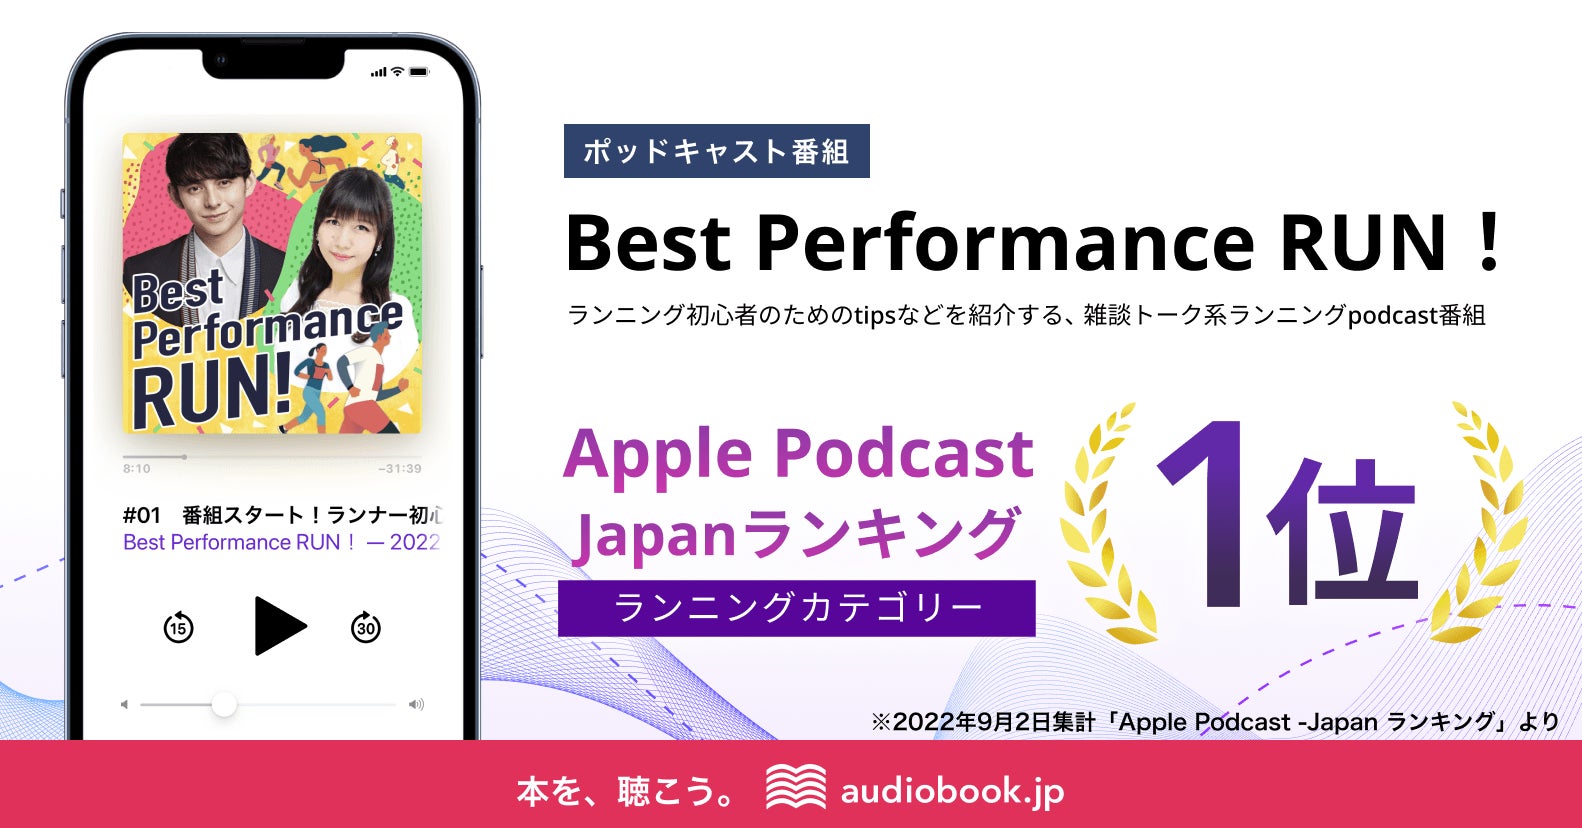 配信初日にApple Podcast -Japanランキングで1位獲得！ハリー杉山×井上喜久子MCのランニングポッドキャスト番組「Best Performance RUN！」が好発進のサブ画像1